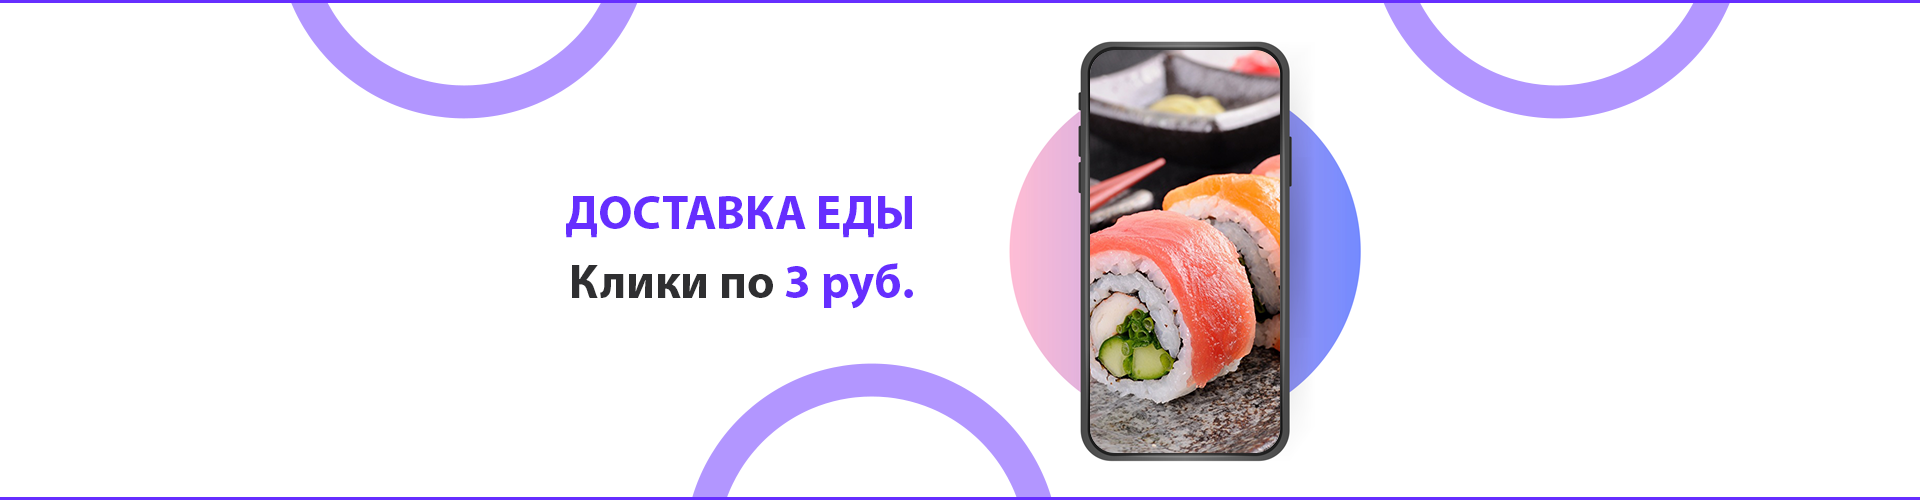 Служба доставки еды Мука&Рис — продвижение ВКонтакте. Клики по 3 ₽